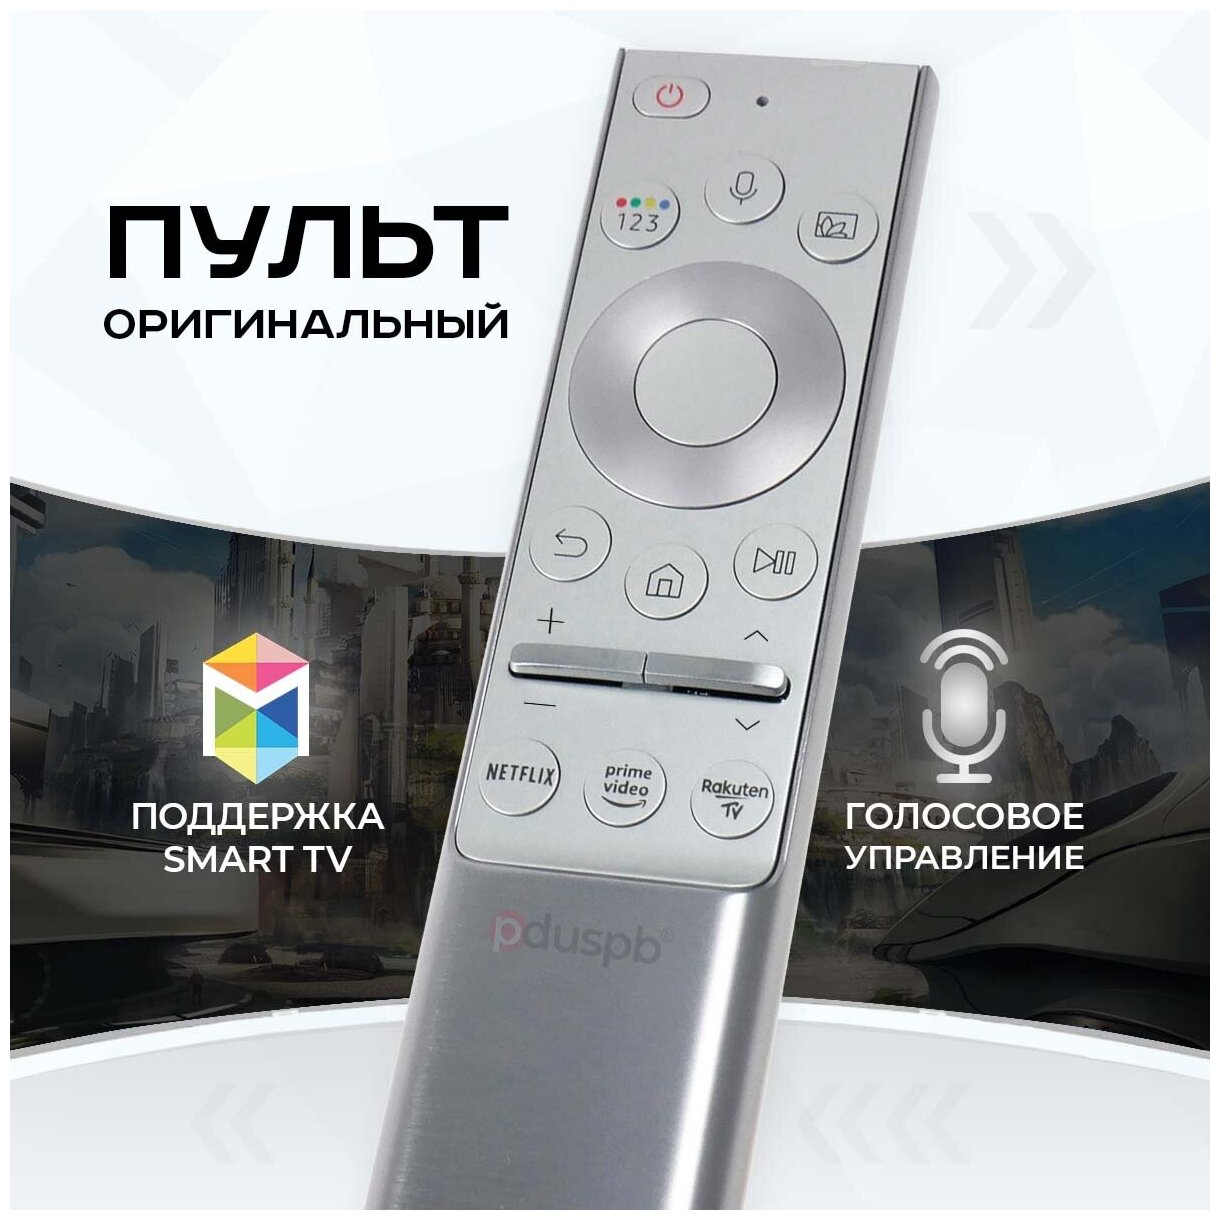 Голосовой пульт BN59-01328A (BN59-01327B) Оригинал для телевизора Samsung SMART TV Premium в металлическом корпусе Самсунг Смарт ТВ